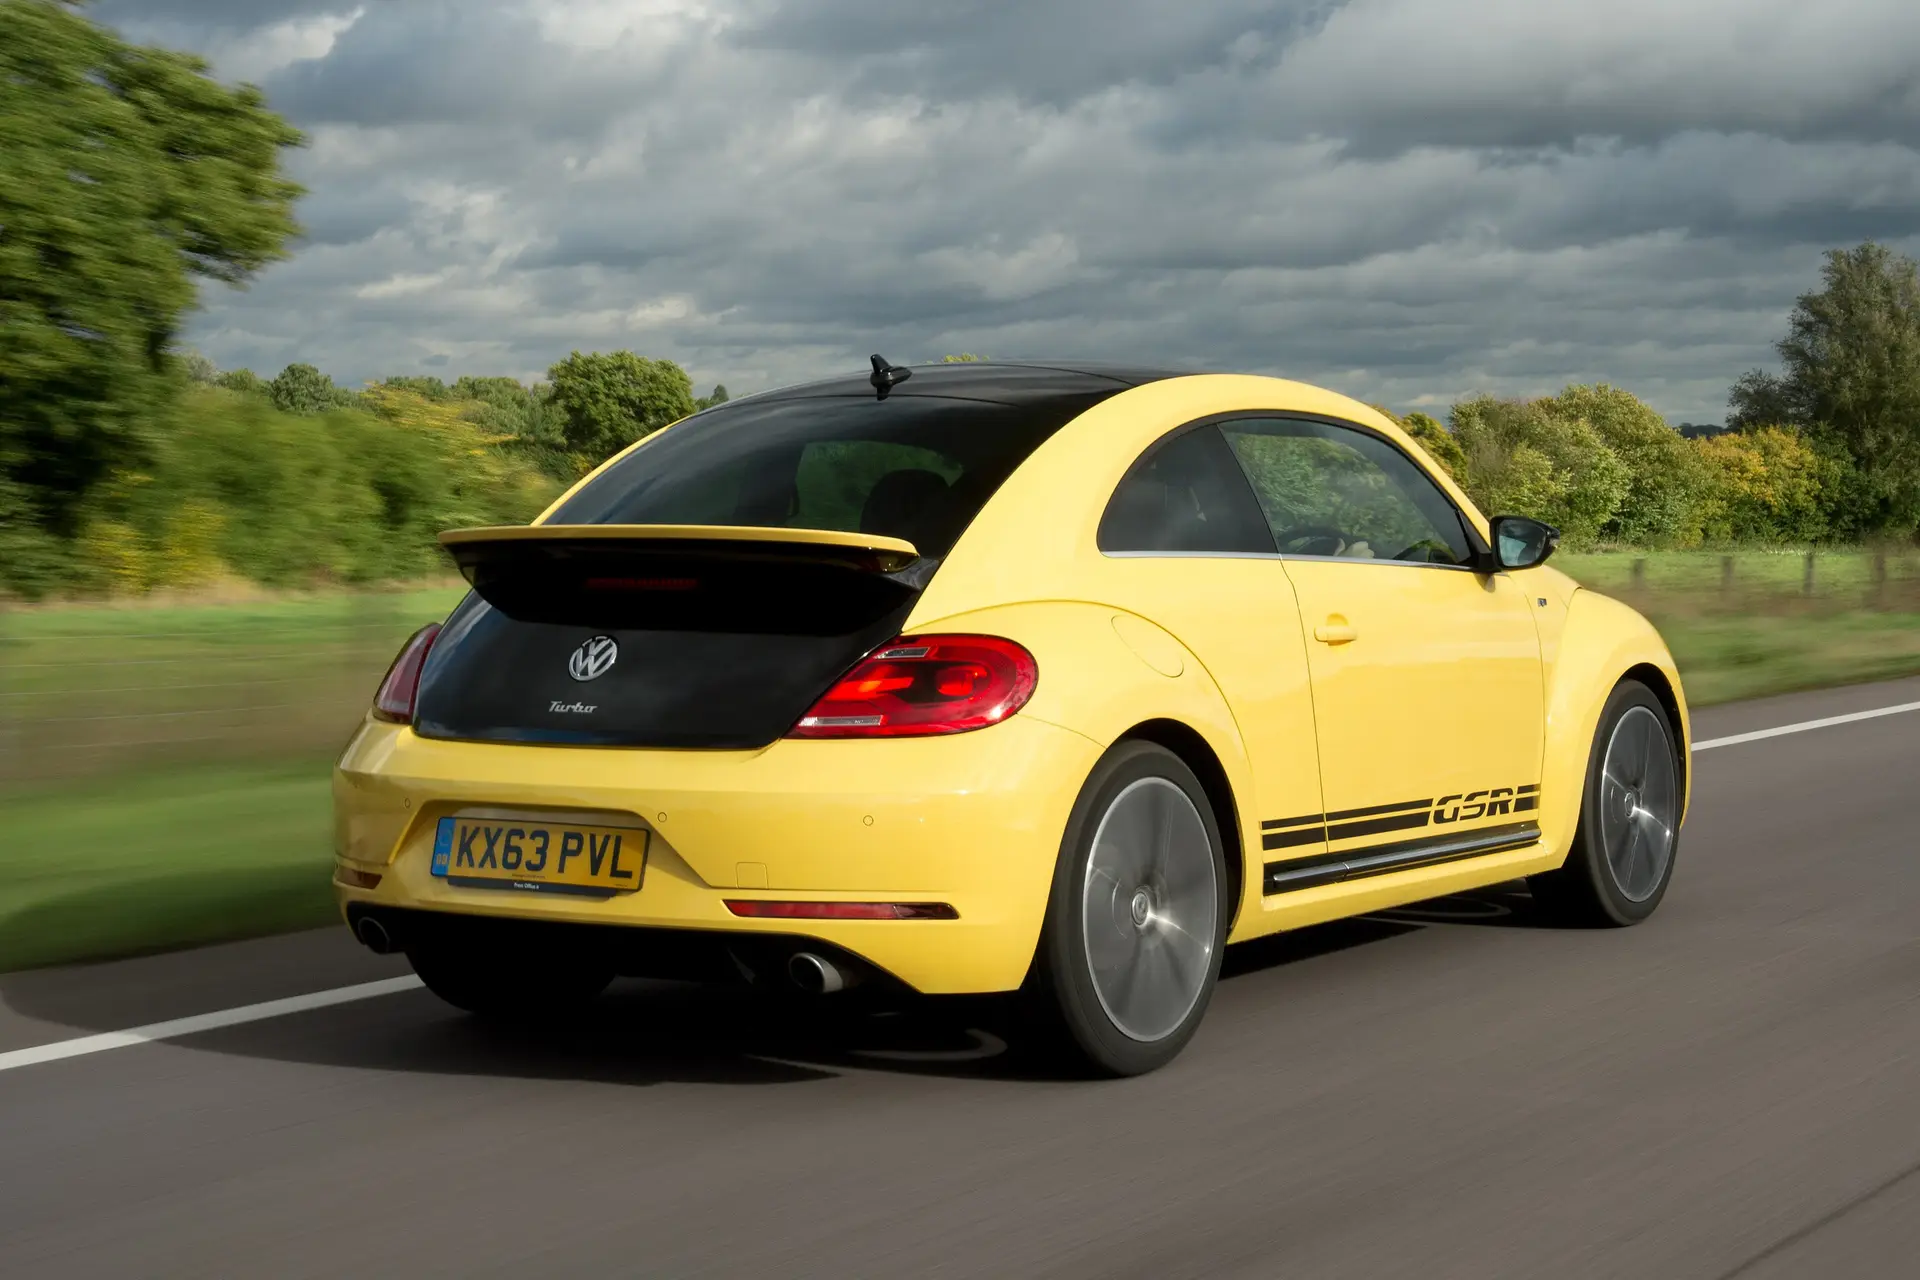 2012 Volkswagen Beetle Price, Value, Ratings & Reviews